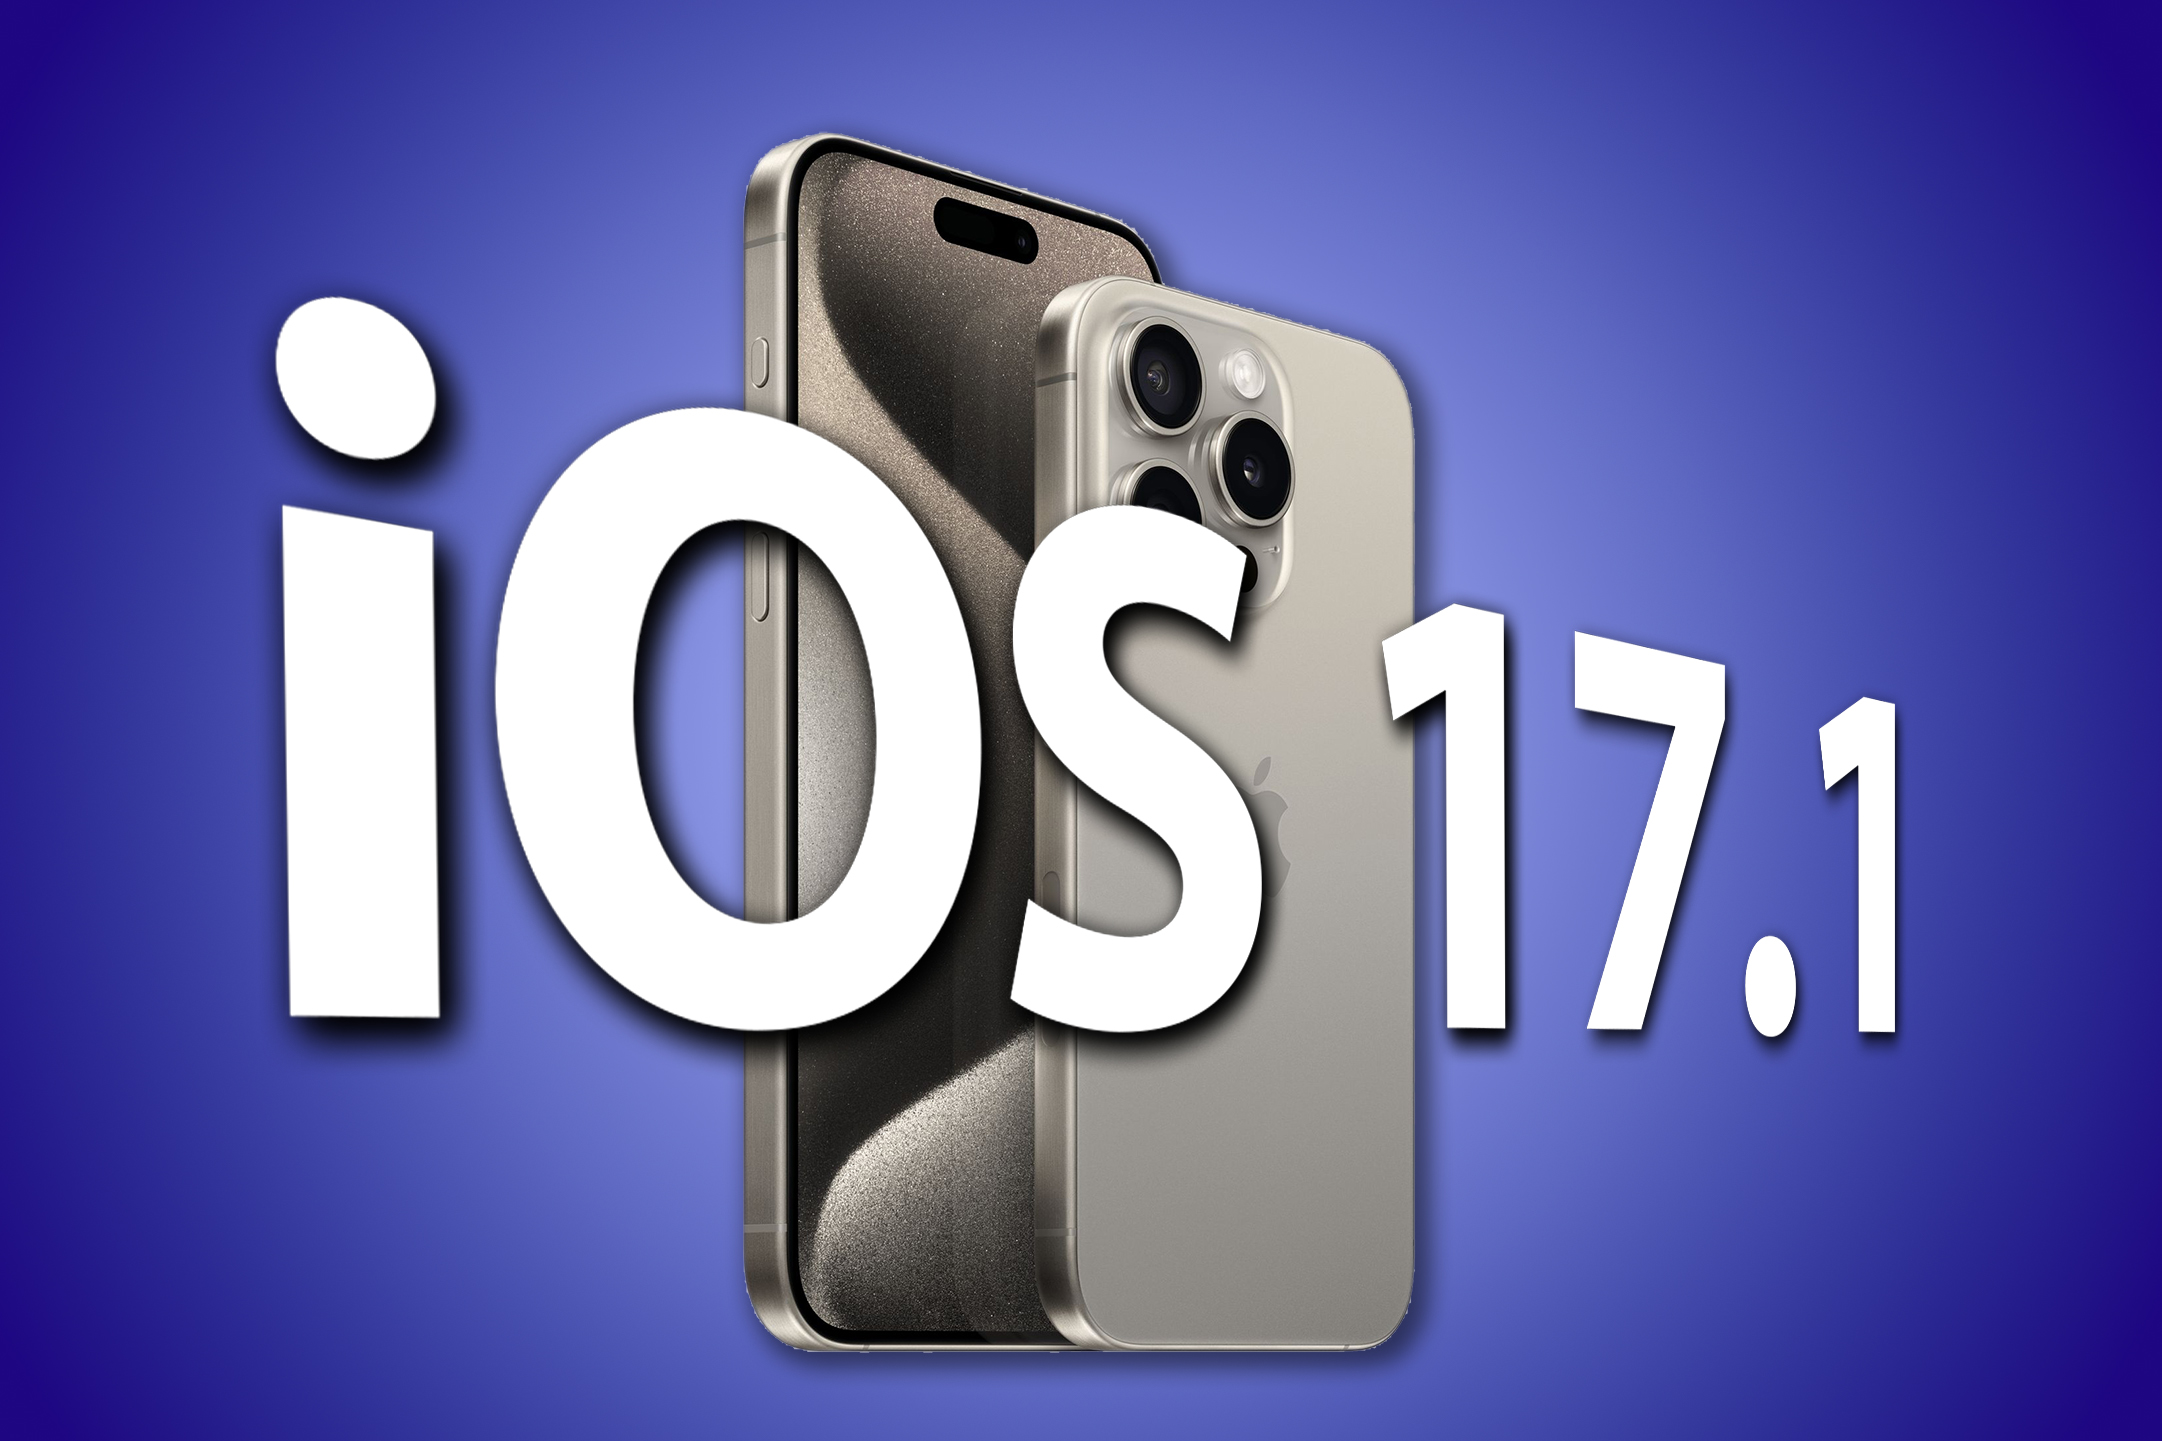 Apple iOS 17.1 Update